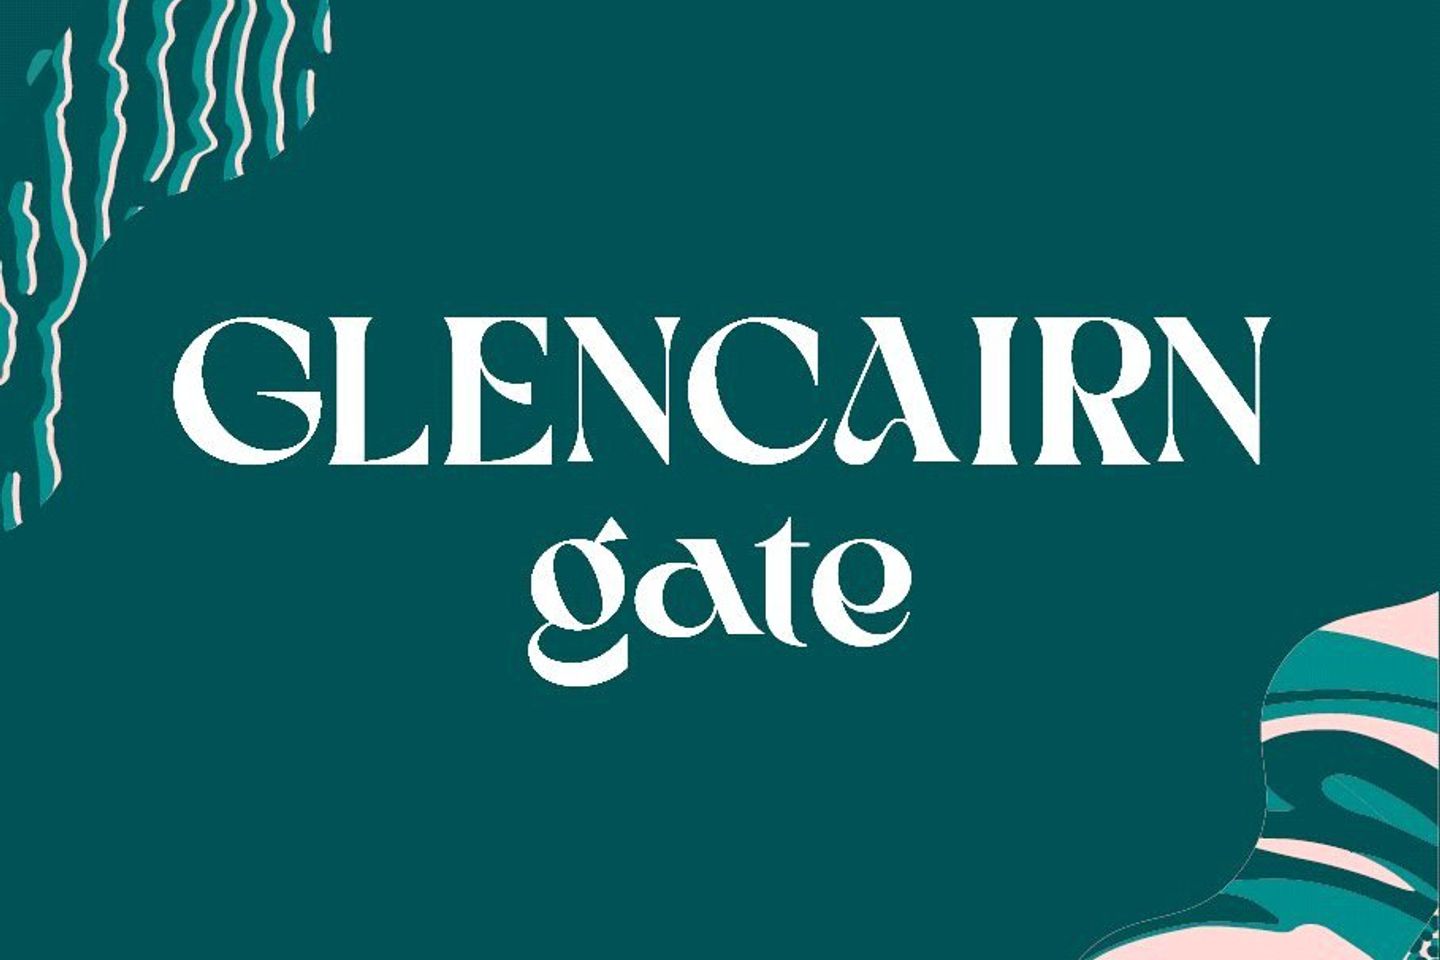 Pine, Glencairn Gate, Pine, Glencairn Gate, Leopardstown, Dublin 18